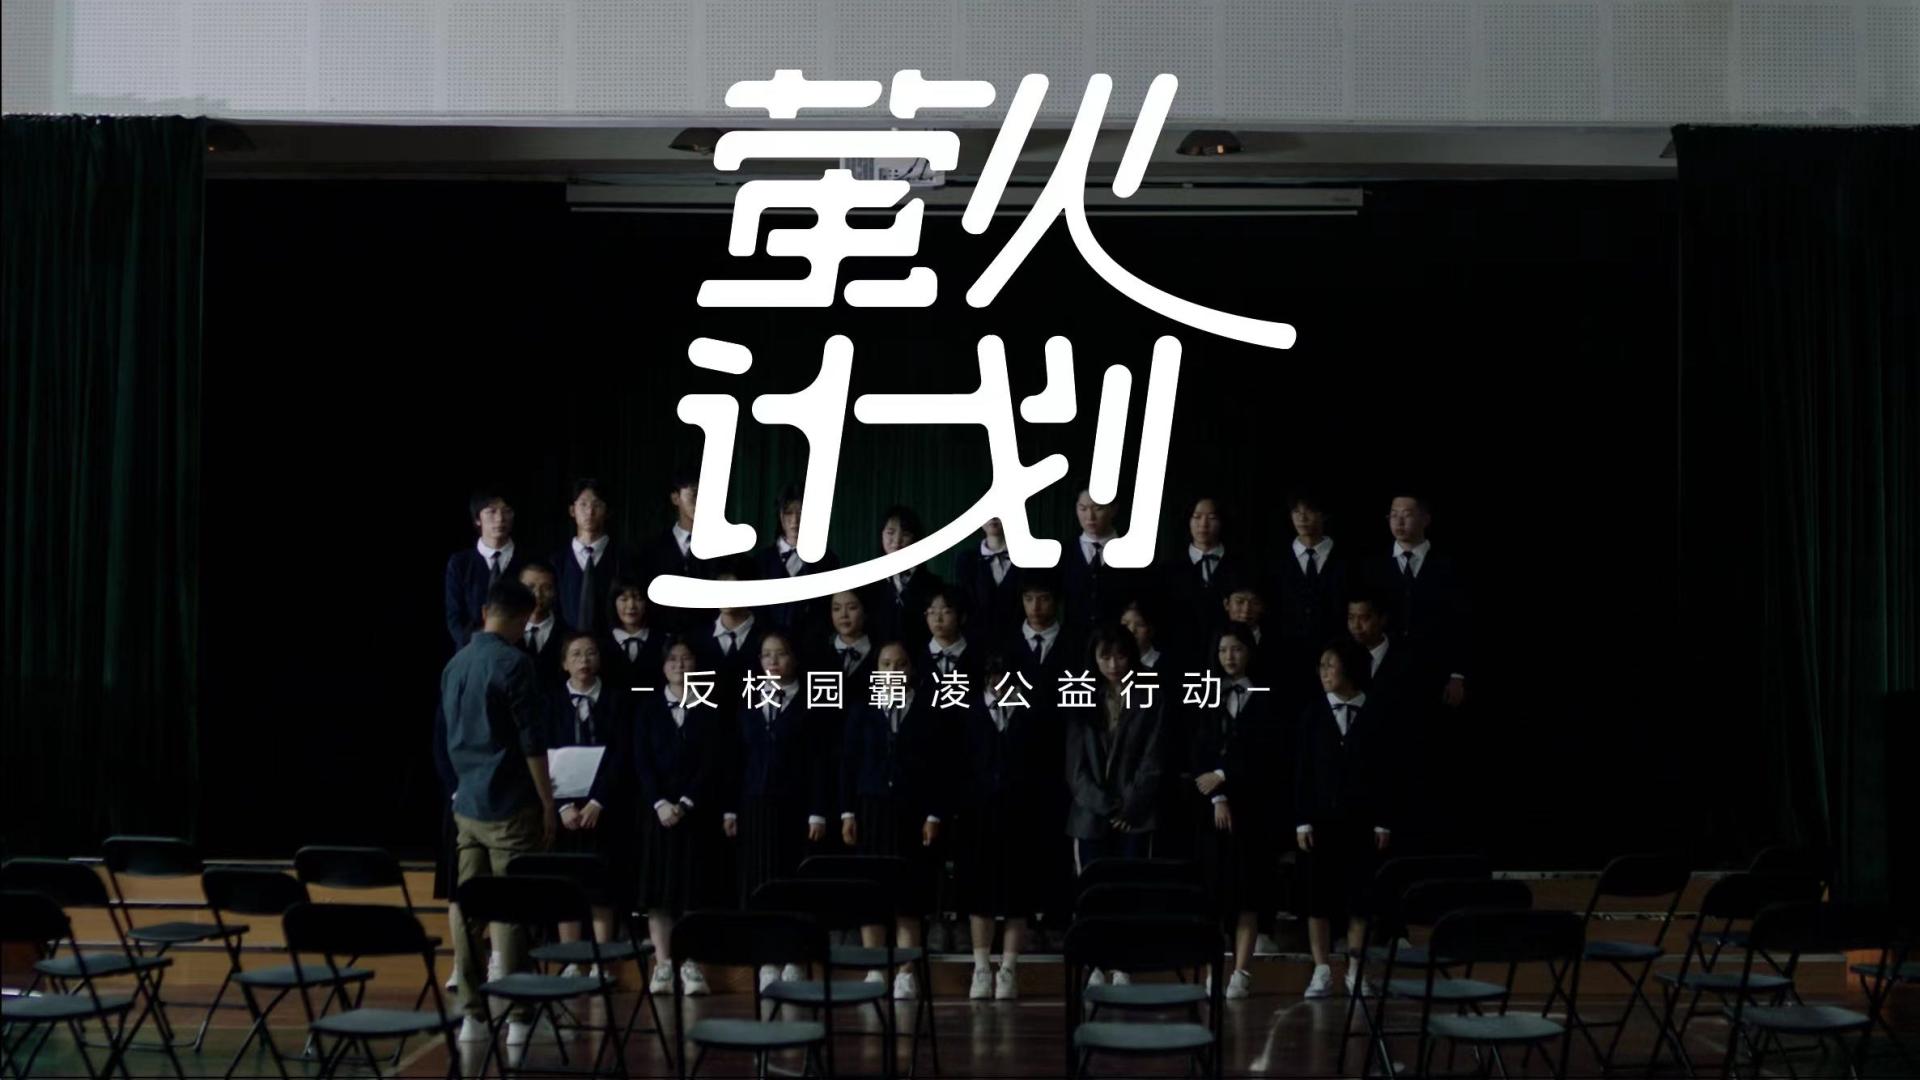 珀莱雅 x 中国教育电视台 | 反校园霸凌公益片《事》